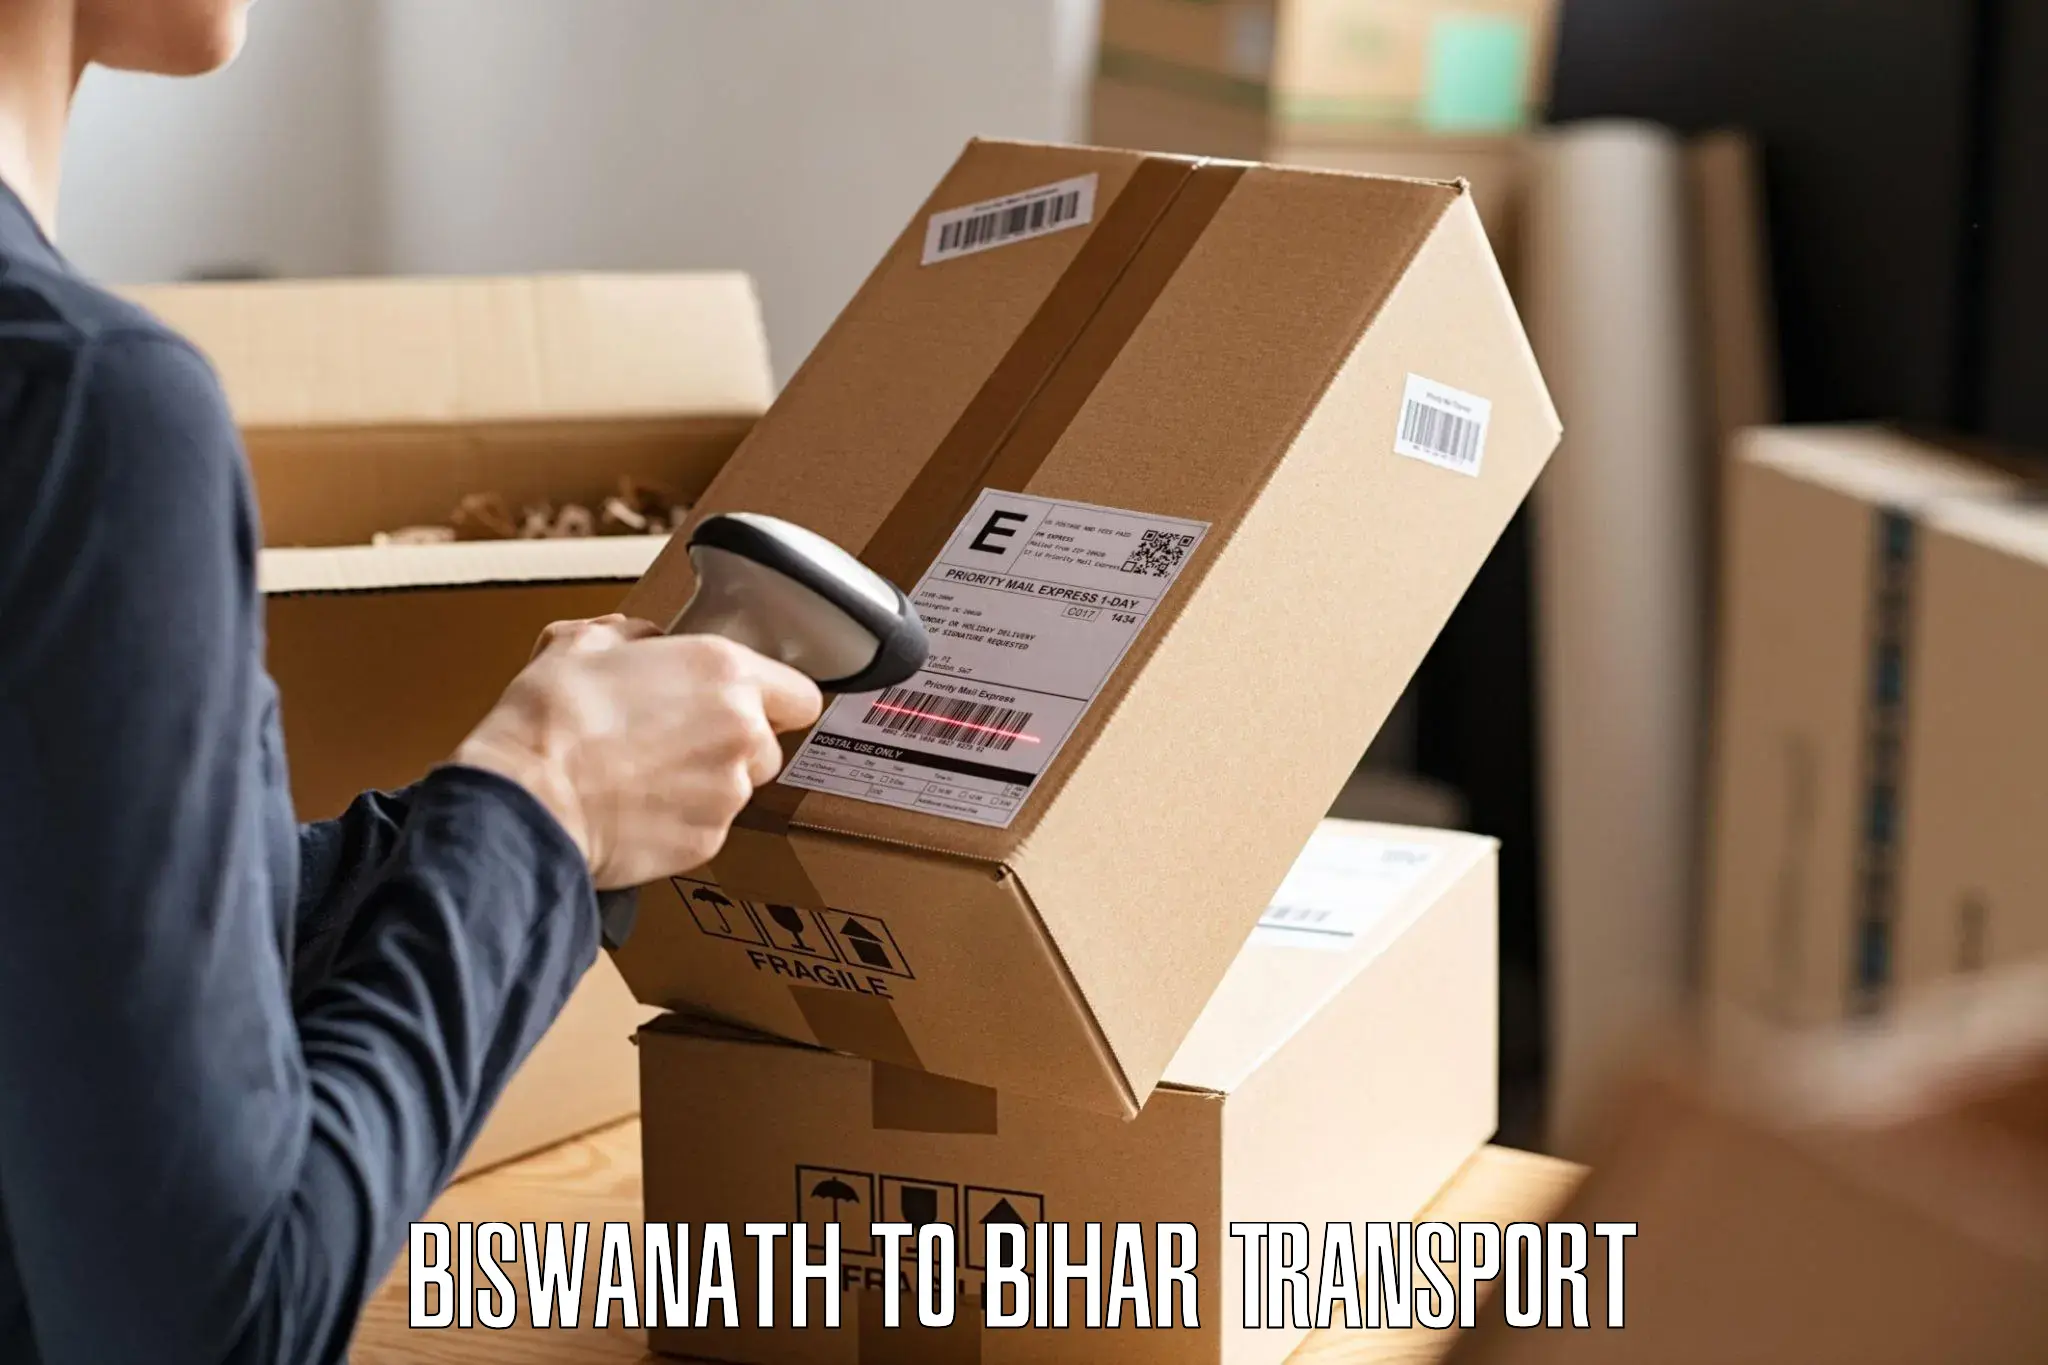 Nearest transport service in Biswanath to Sitamarhi